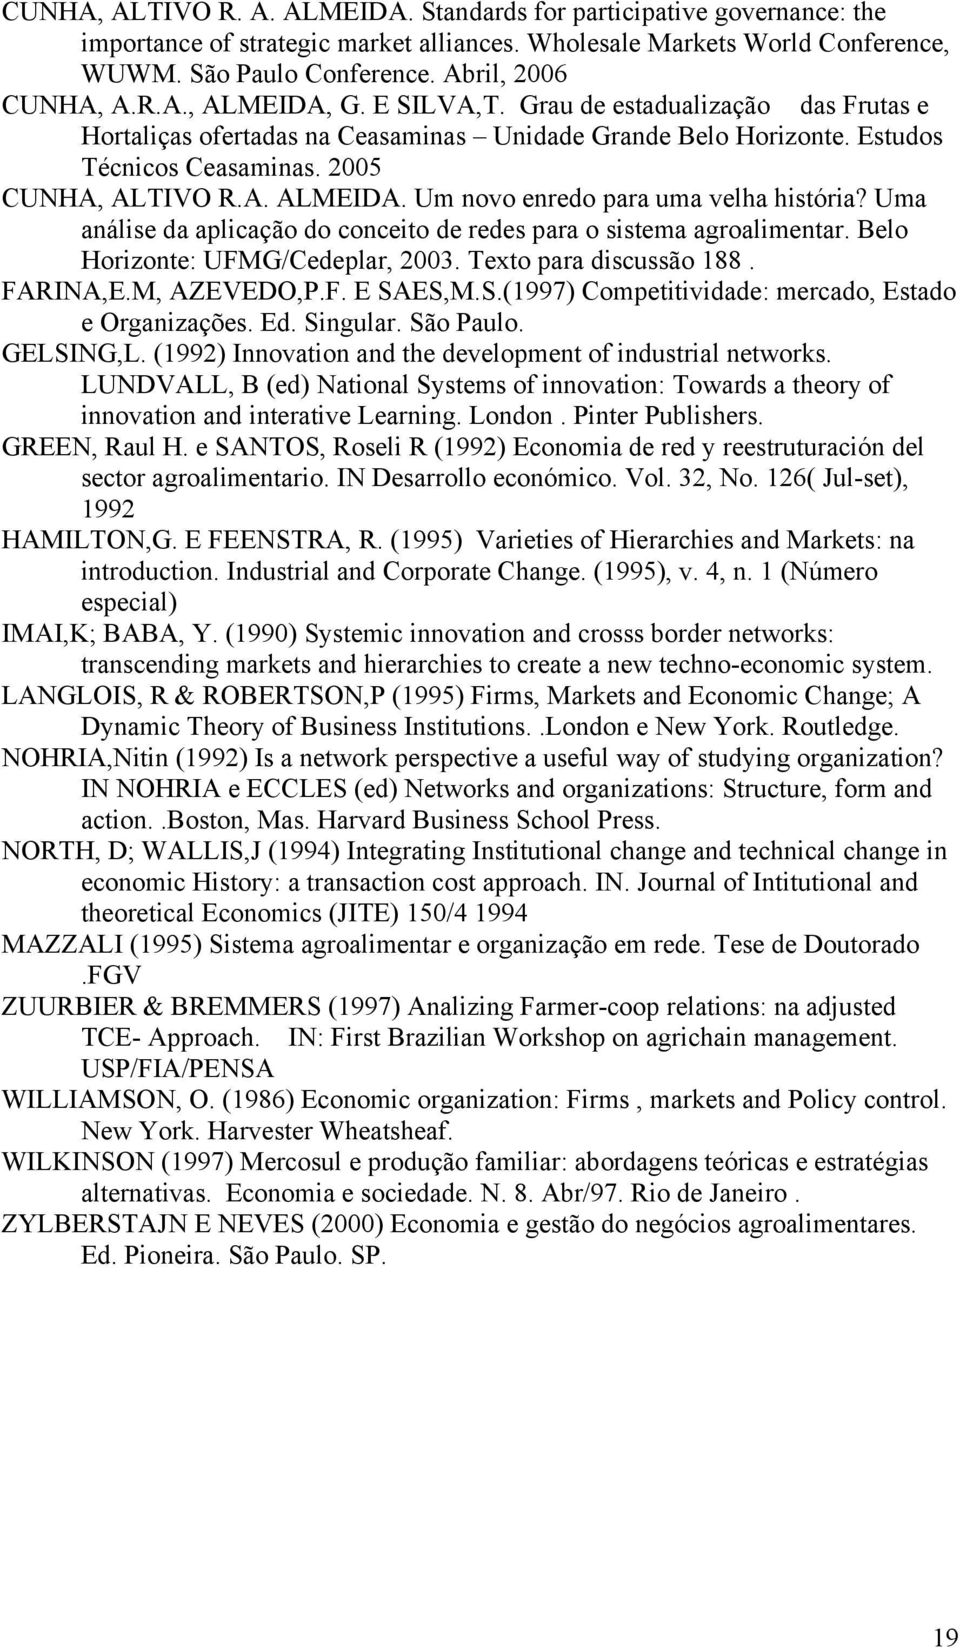 Uma análise da aplicação do conceito de redes para o sistema agroalimentar. Belo Horizonte: UFMG/Cedeplar, 2003. Texto para discussão 188. FARINA,E.M, AZEVEDO,P.F. E SA